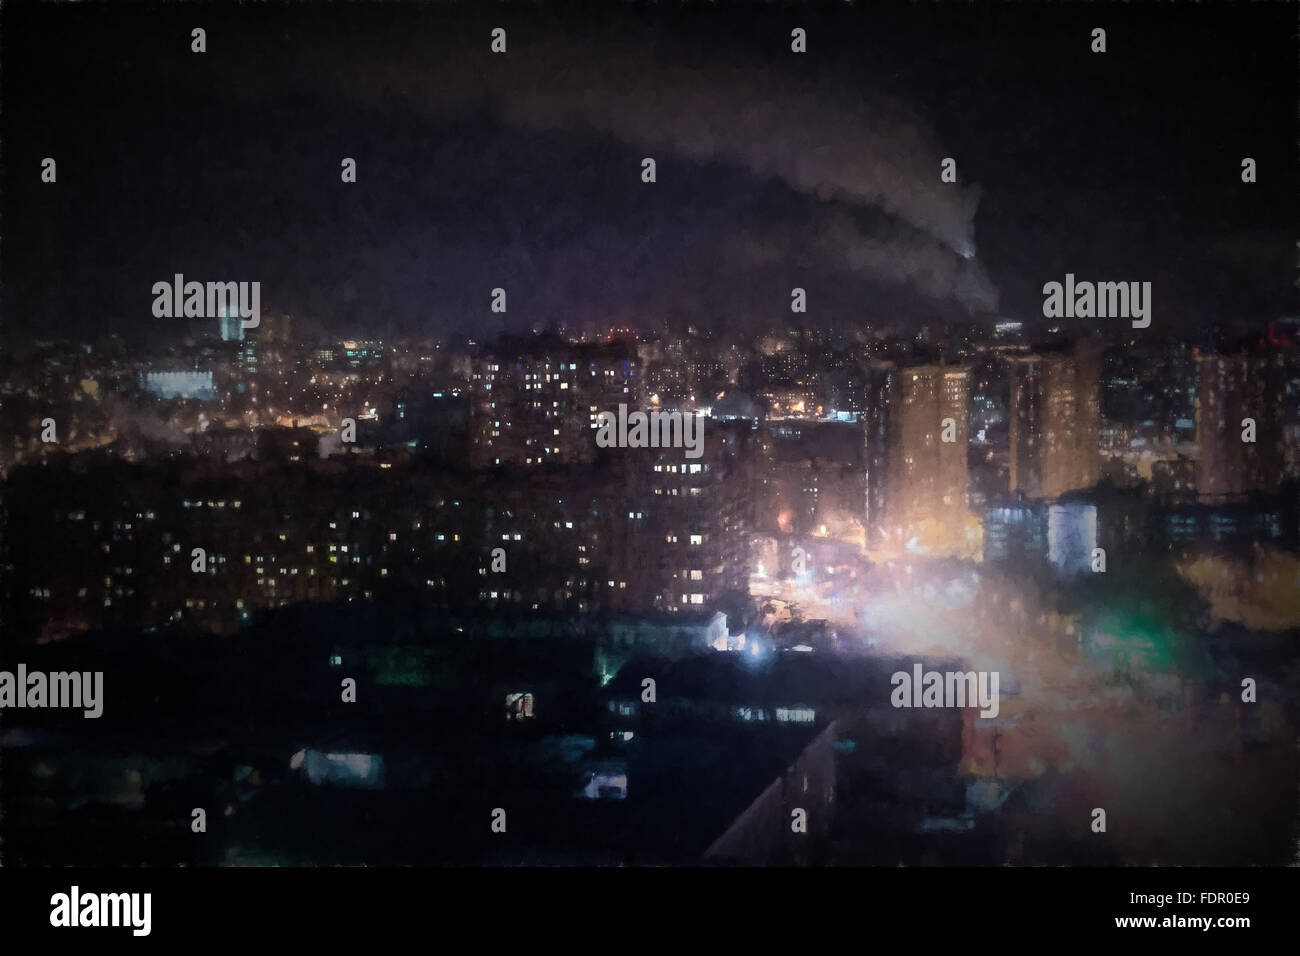 Esto es una imagen de una ciudad por la noche usando un aceite estilo estilo claroscuro efecto. Destacan las muchas luces nocturnas Foto de stock